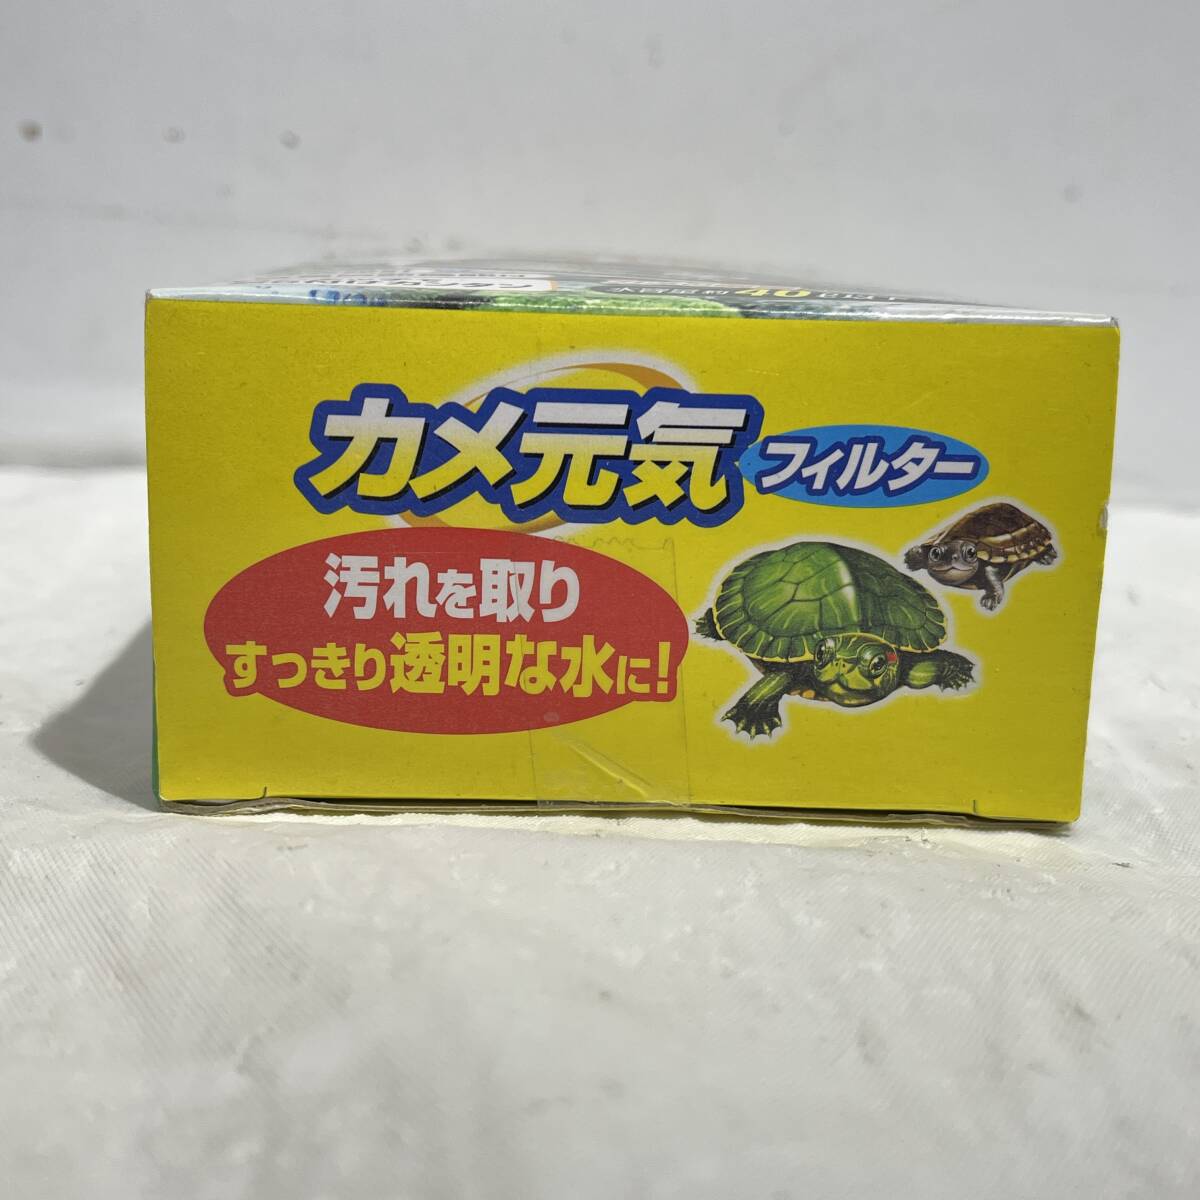 (. дерево )GEX/jek ska me для подводный фильтр черепаха изначальный . фильтр zeo свет активированный уголь рак краб черепаха тихий звук аквариум 40L и меньше вертикальный ширина (o)